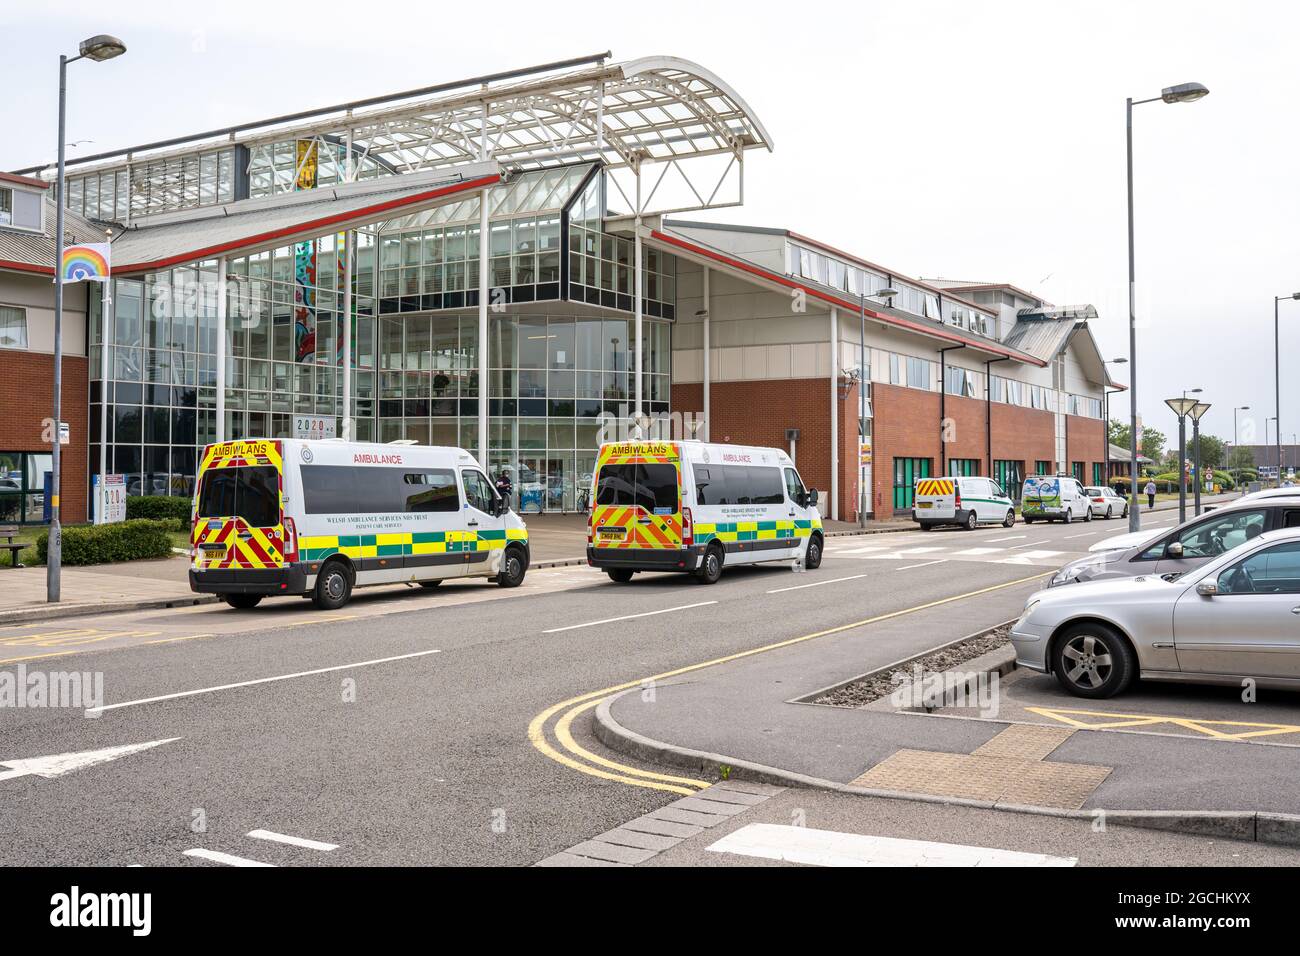 Port Talbot, Royaume-Uni - 4 juillet 2021 : hôpital Neath Port Talbot, sud du pays de Galles, Royaume-Uni. Il est géré par le Conseil de santé de l'Université de Swansea Bay. Ambulances garées à l'extérieur de l'hôpital Banque D'Images